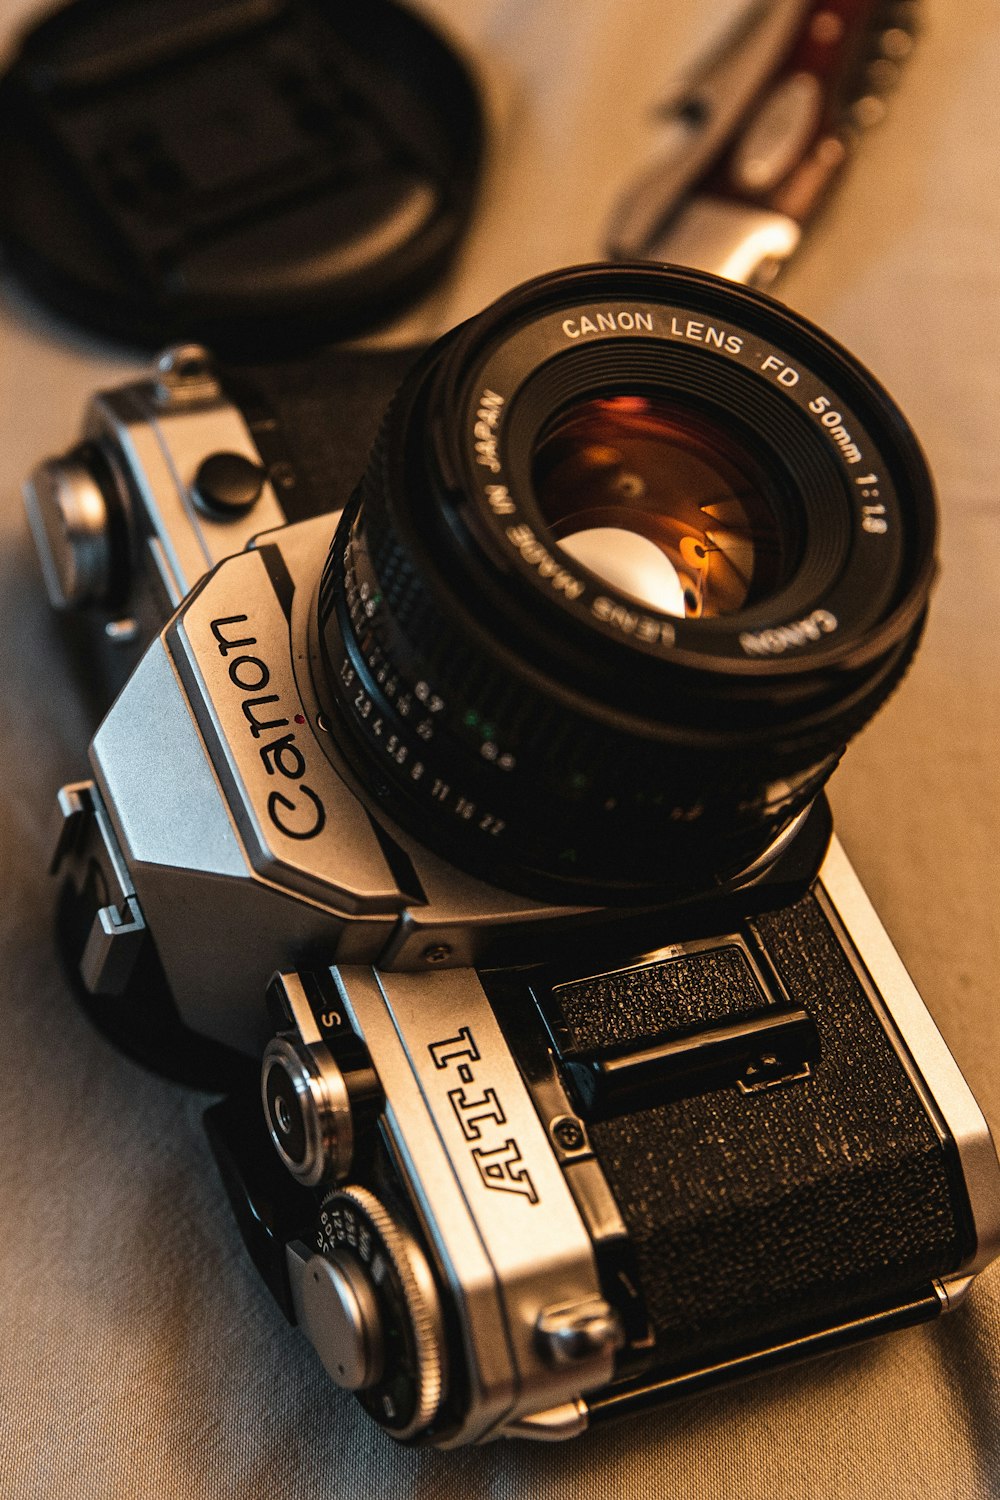 black and gray Canon DSLR camera